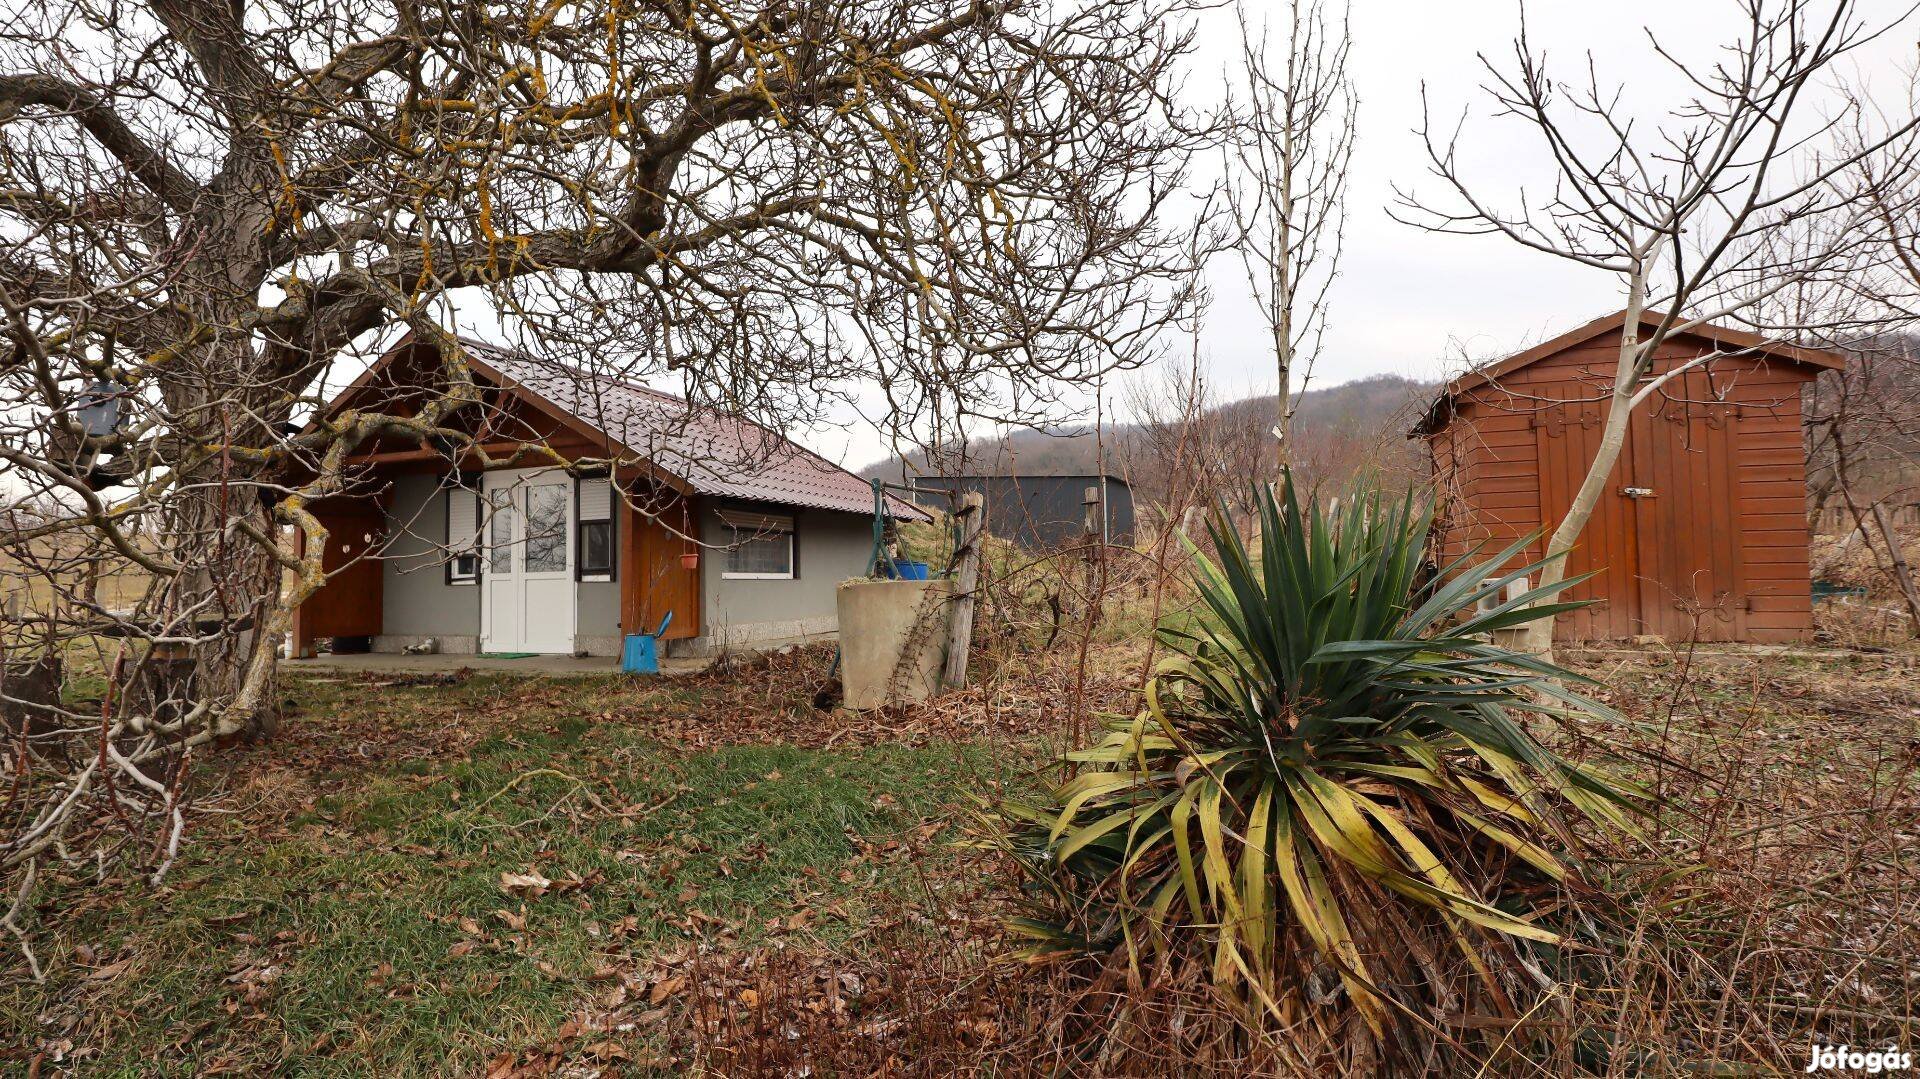 Eladó Csobáncra panorámás zártkert Tapolca-Diszel külterületén